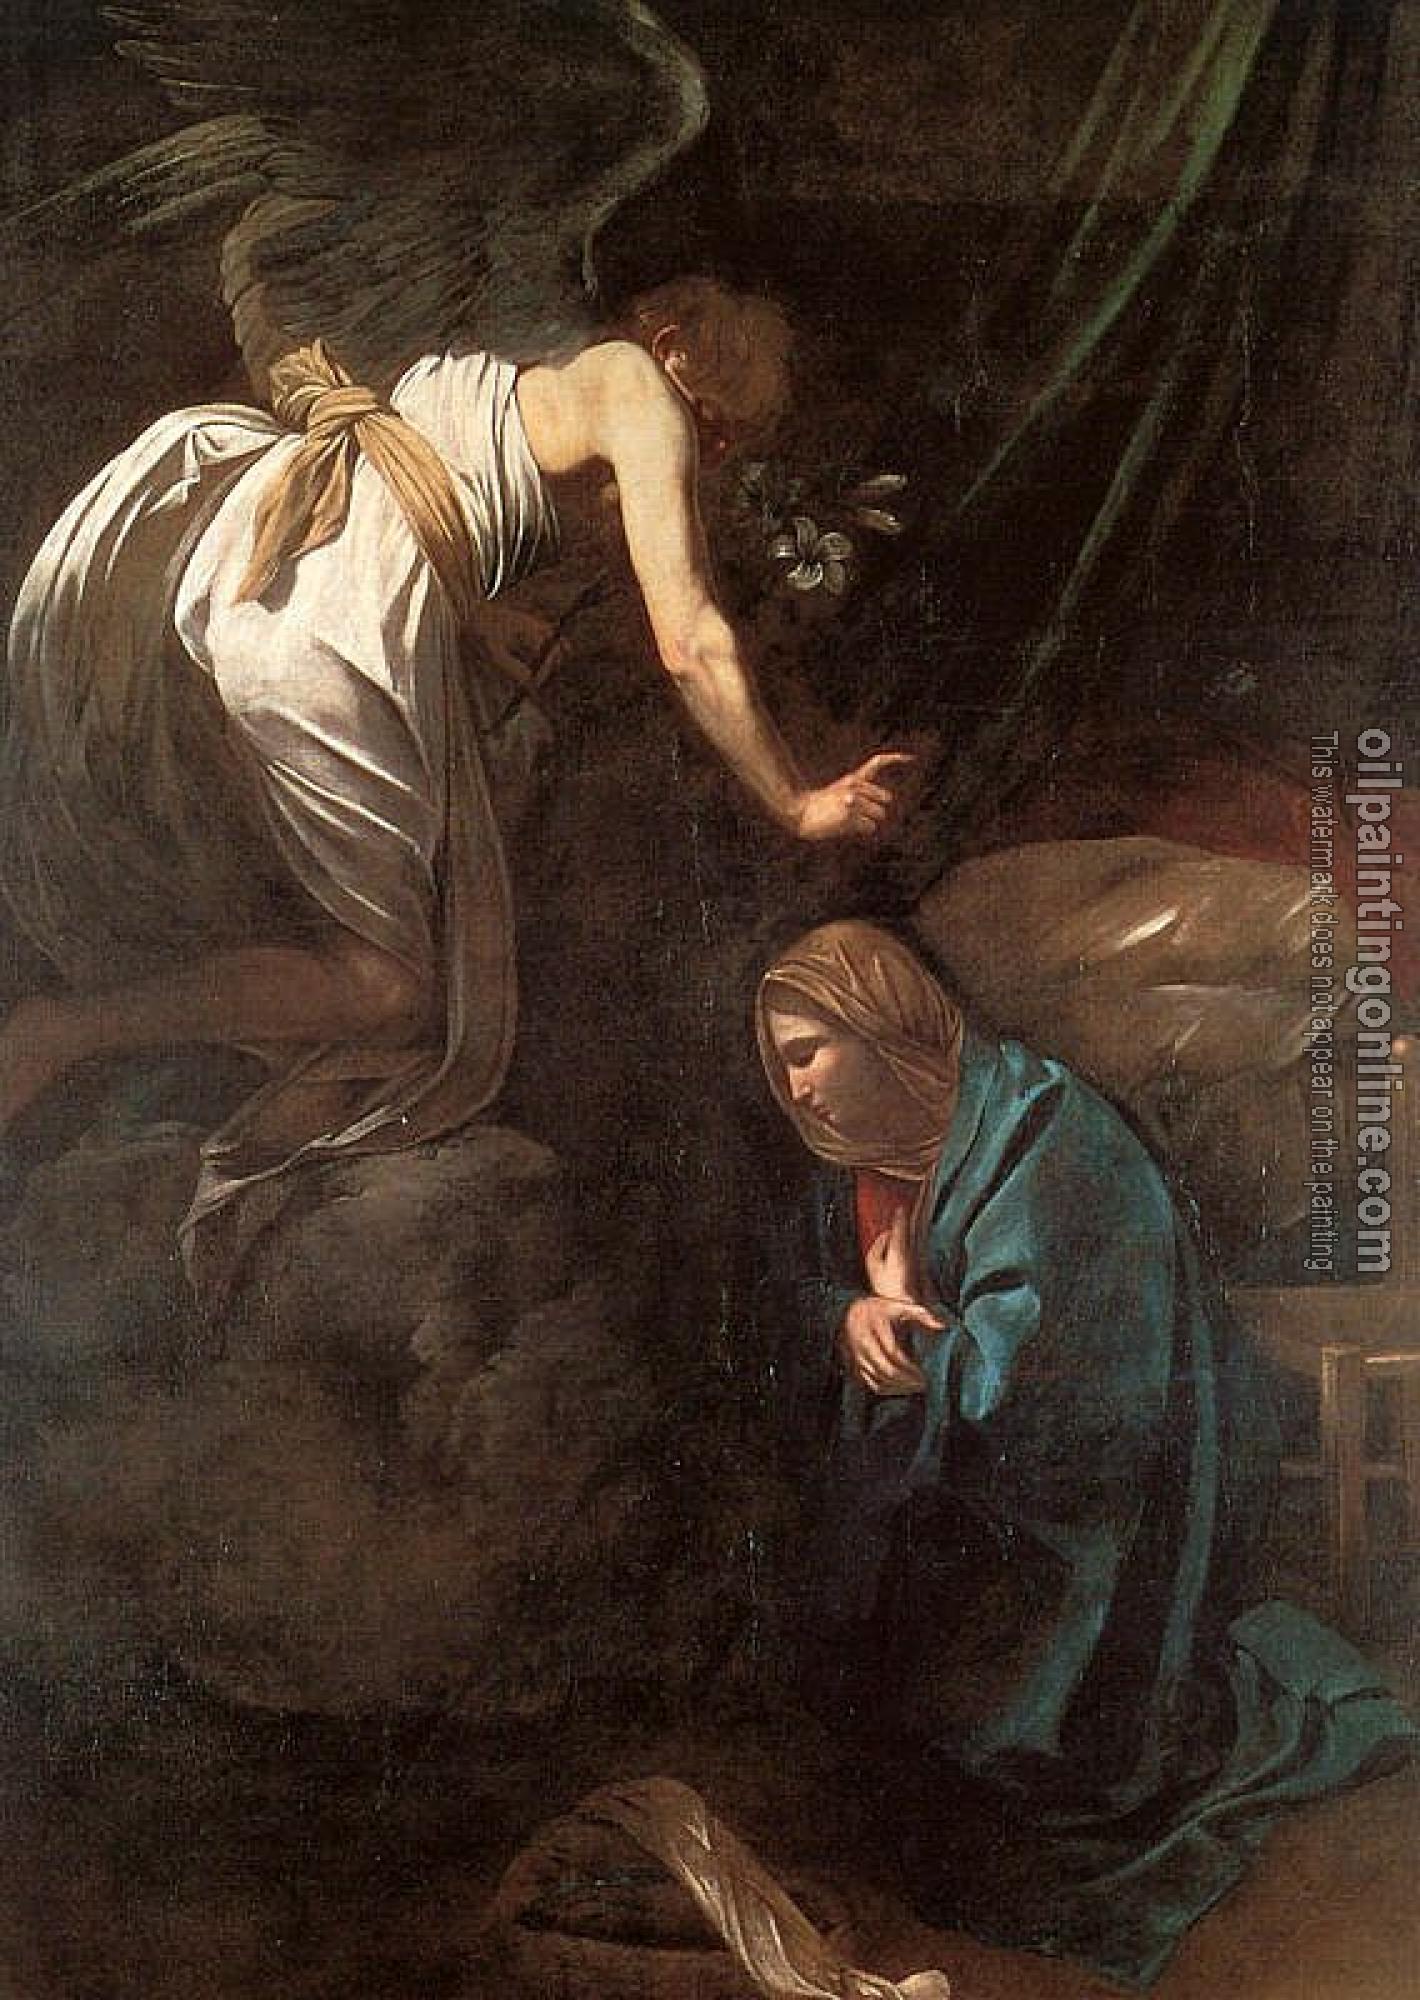 Caravaggio - The Annunciation